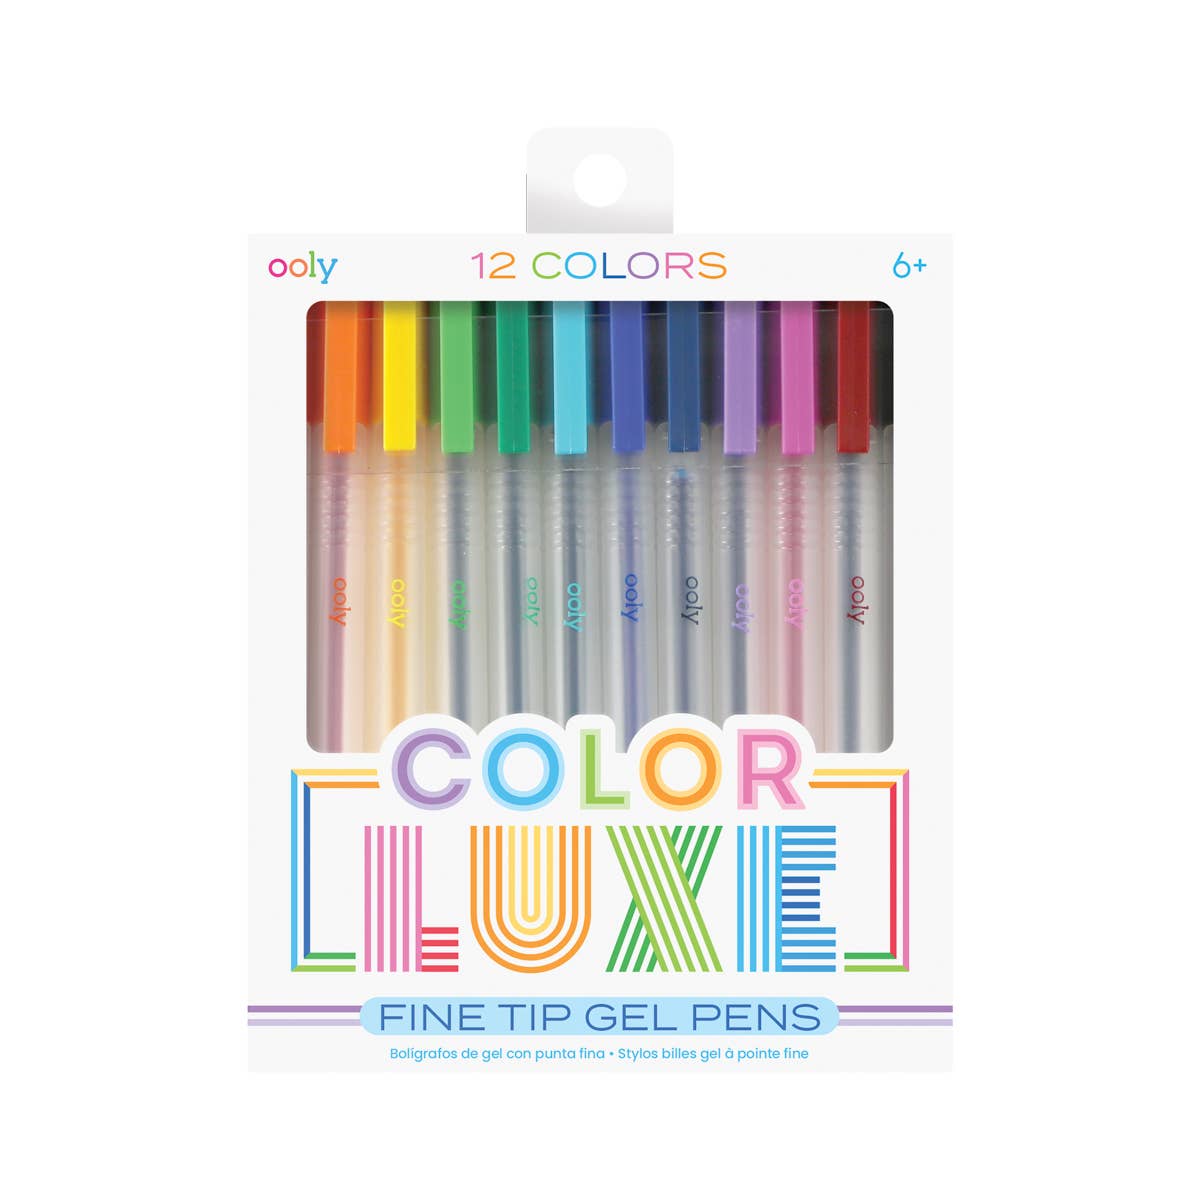 Bolígrafos de gel de lujo de color